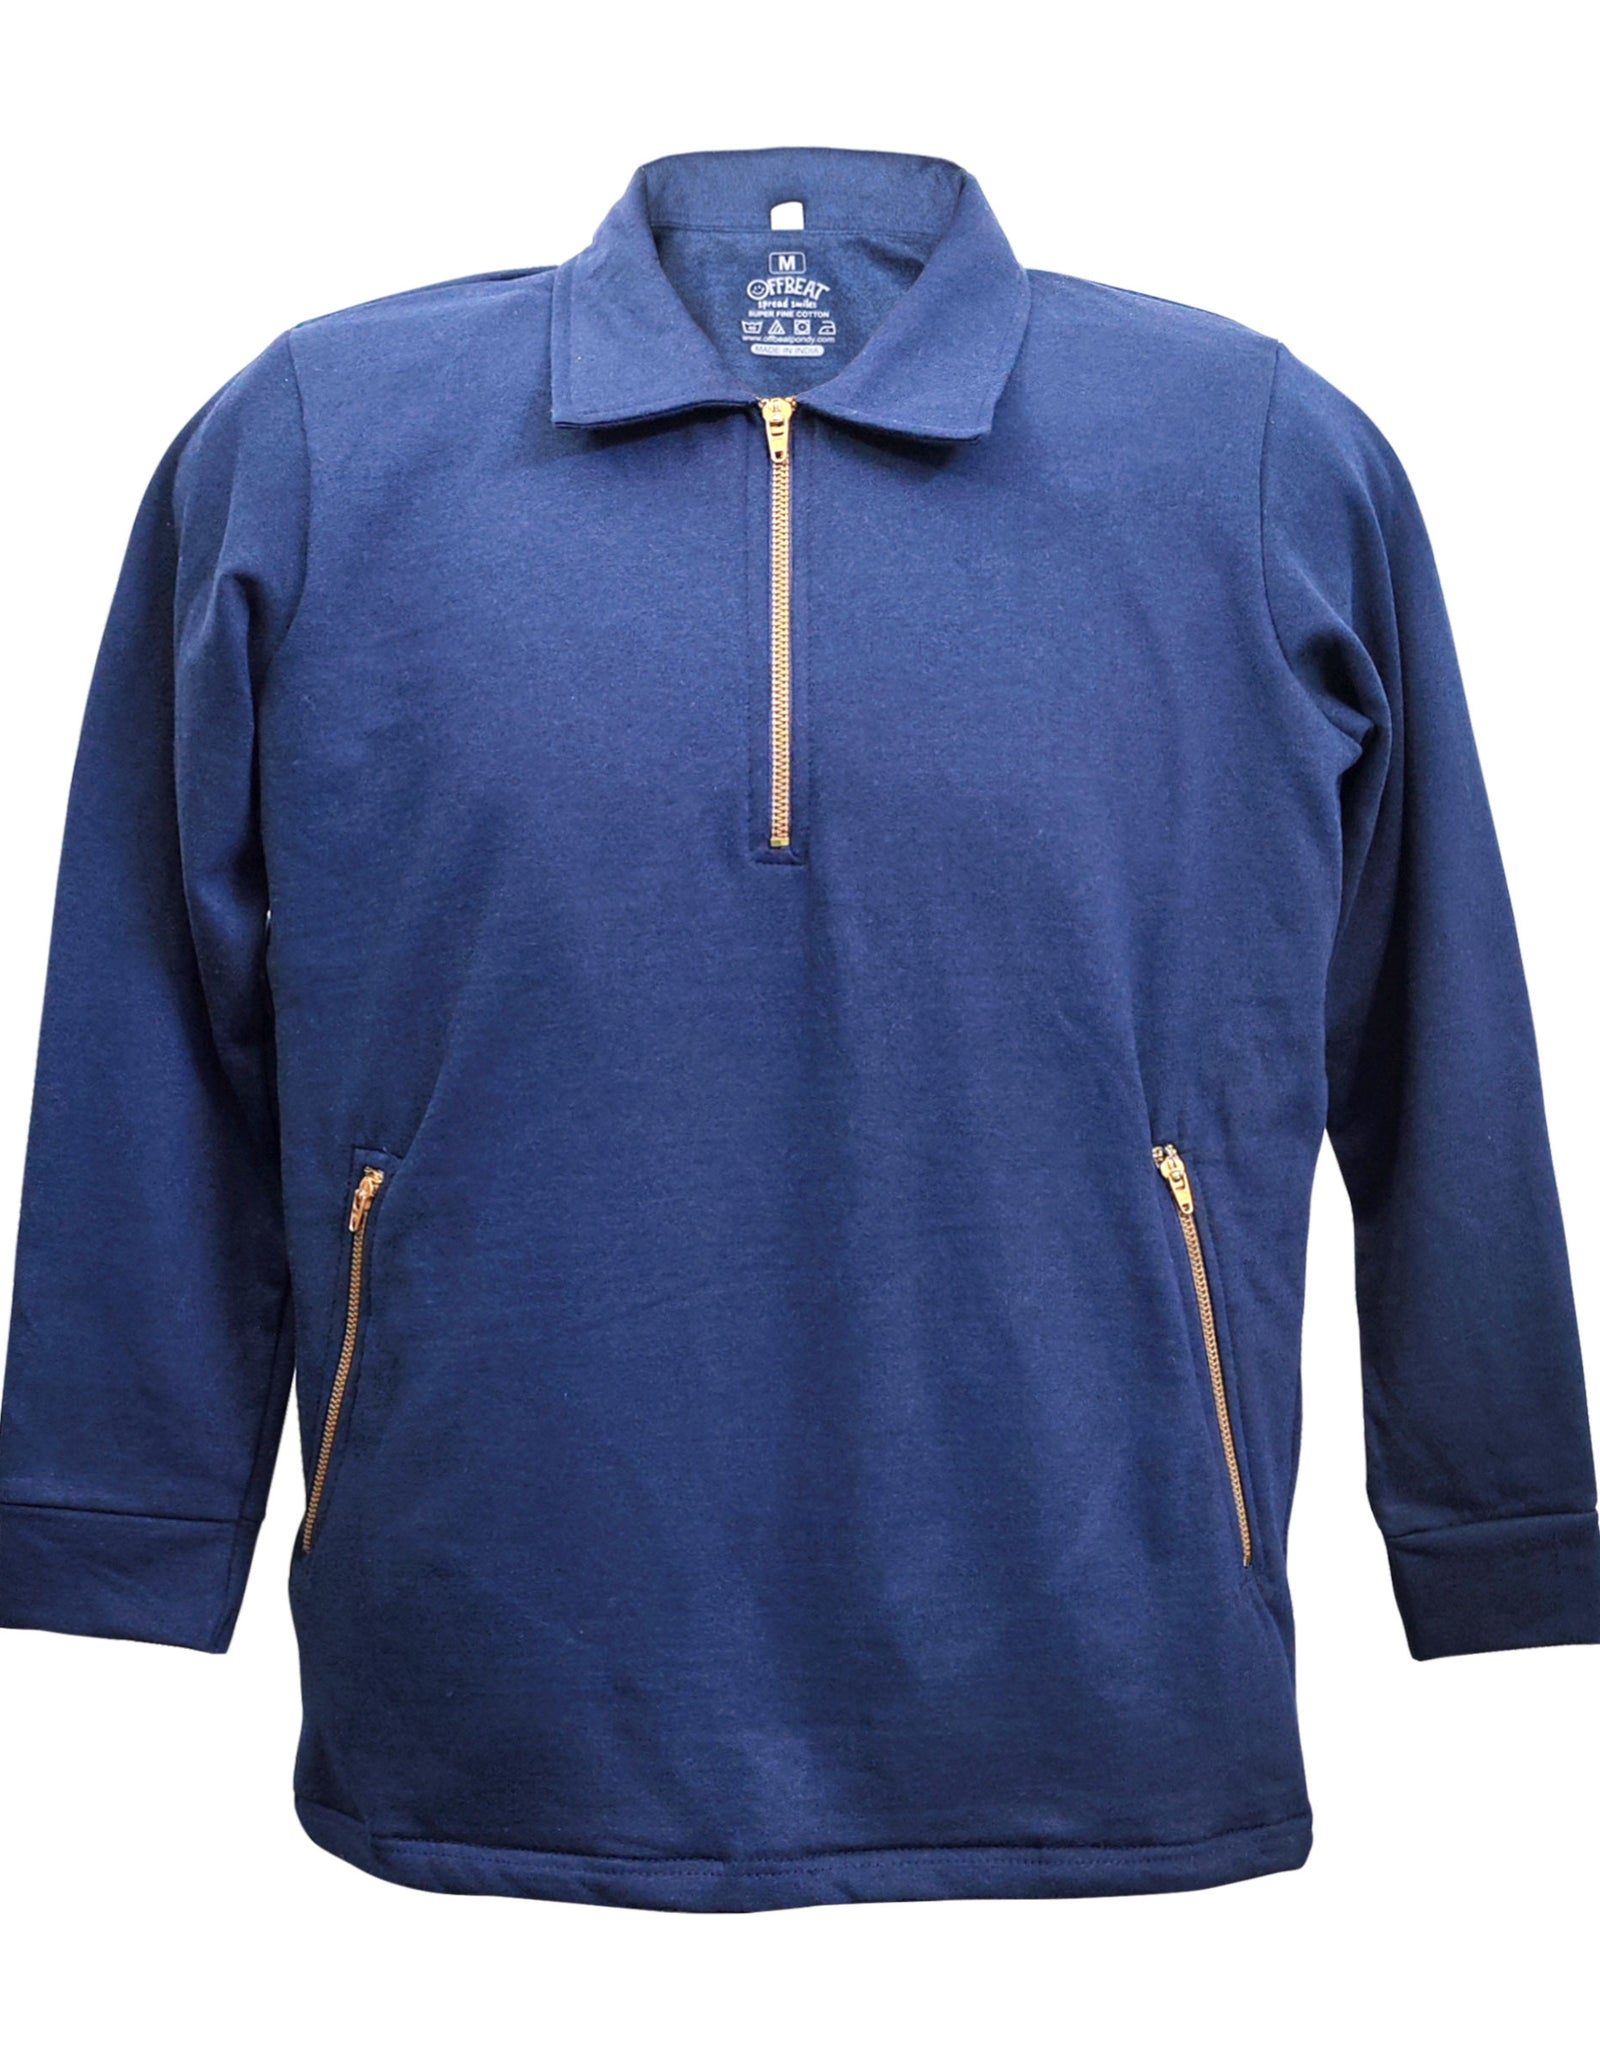 Sweatshirt for Men  - Navy Blue